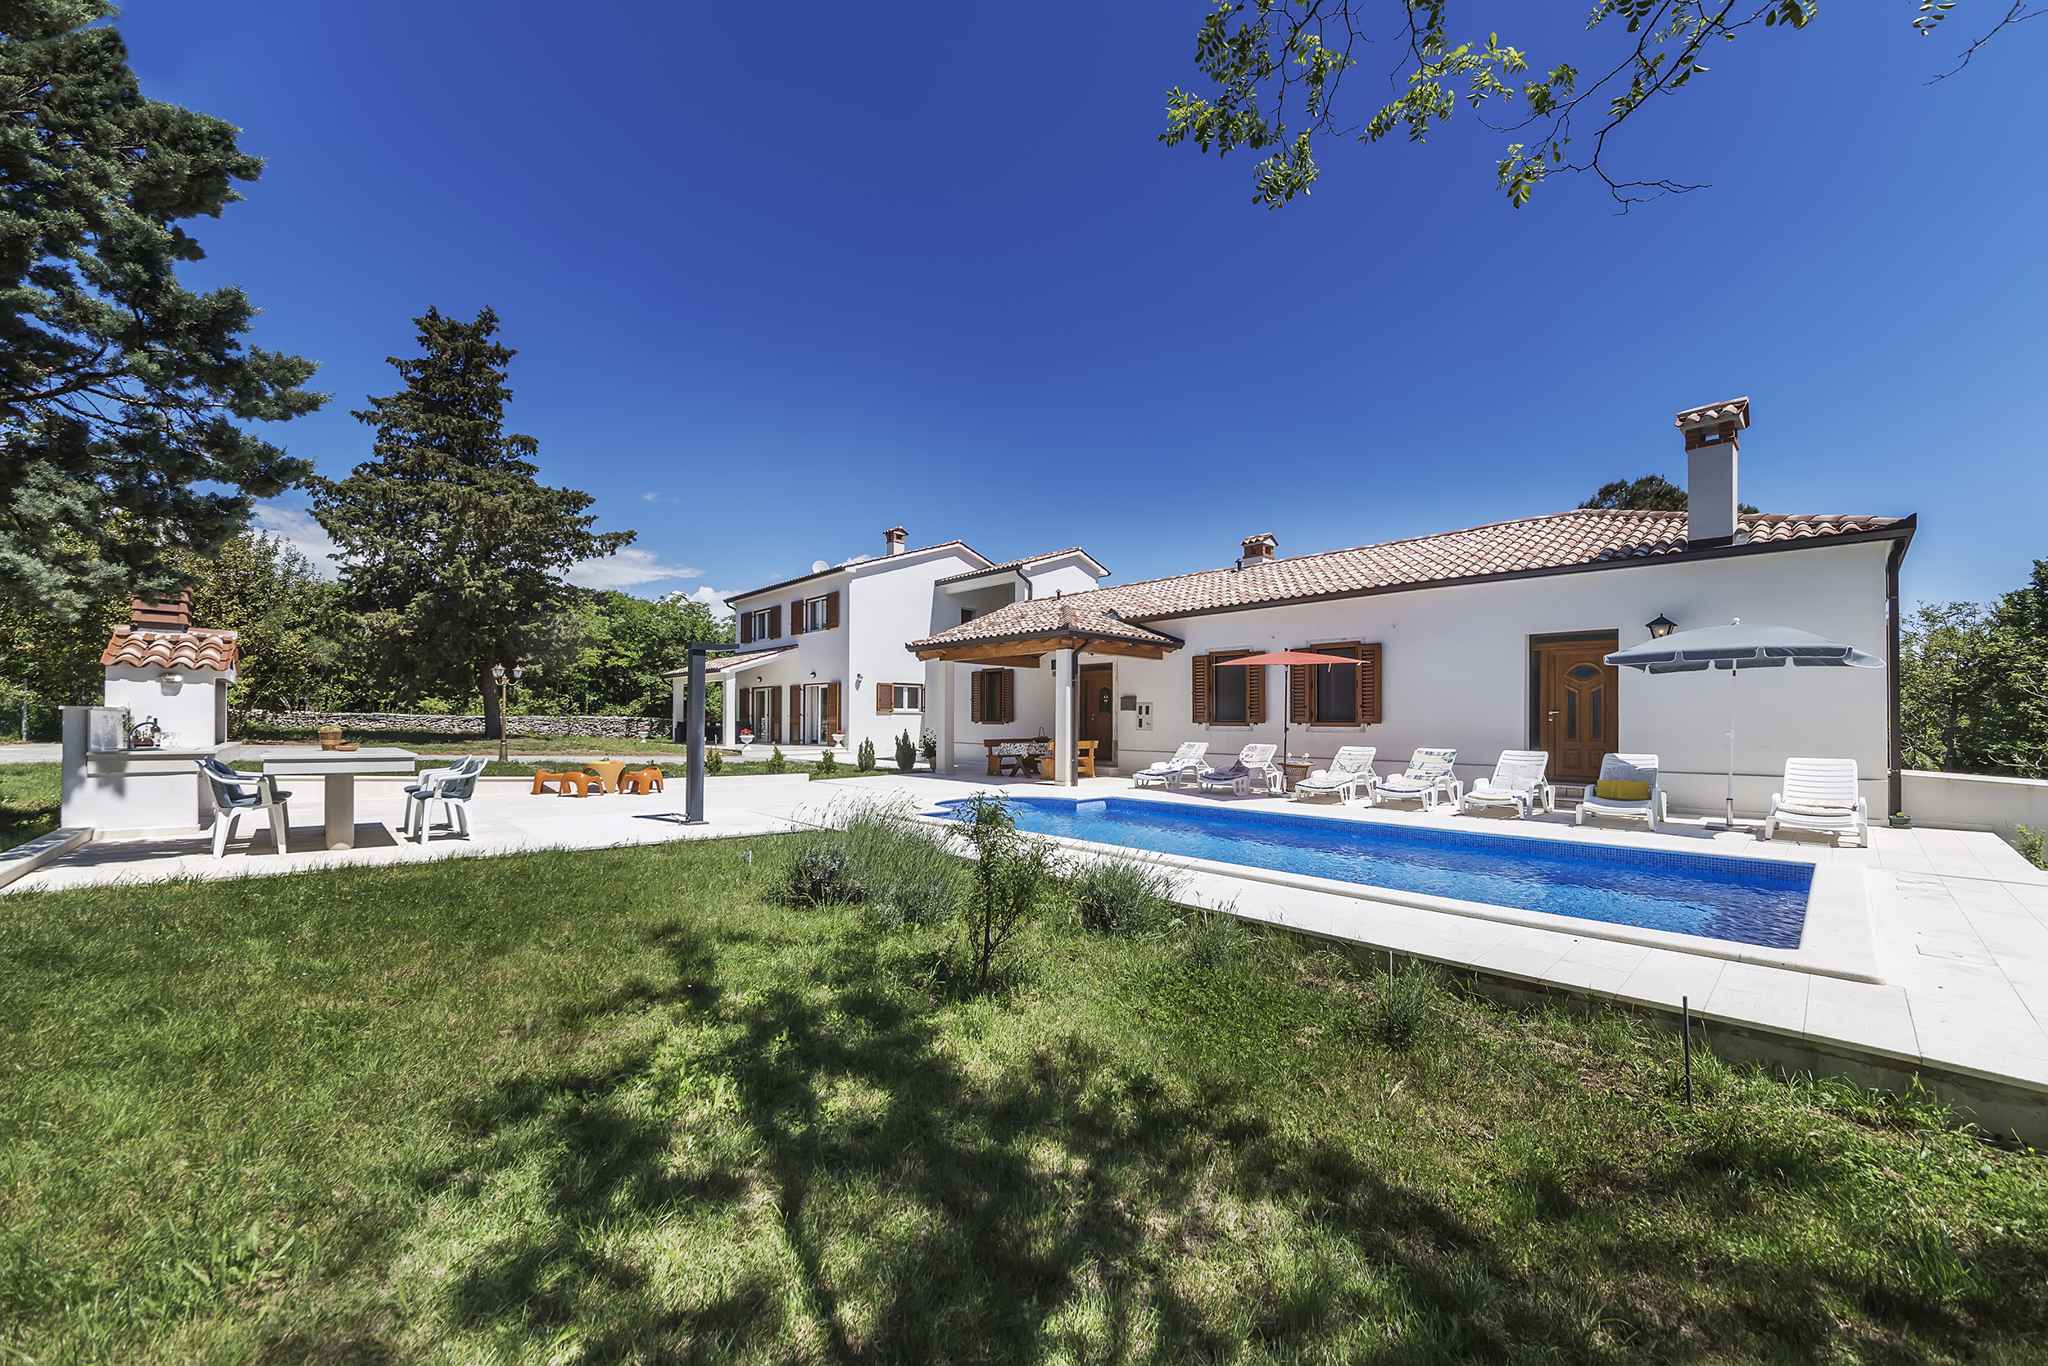 Villa mit Pool auf großem Grundstück Ferienhaus in Kroatien